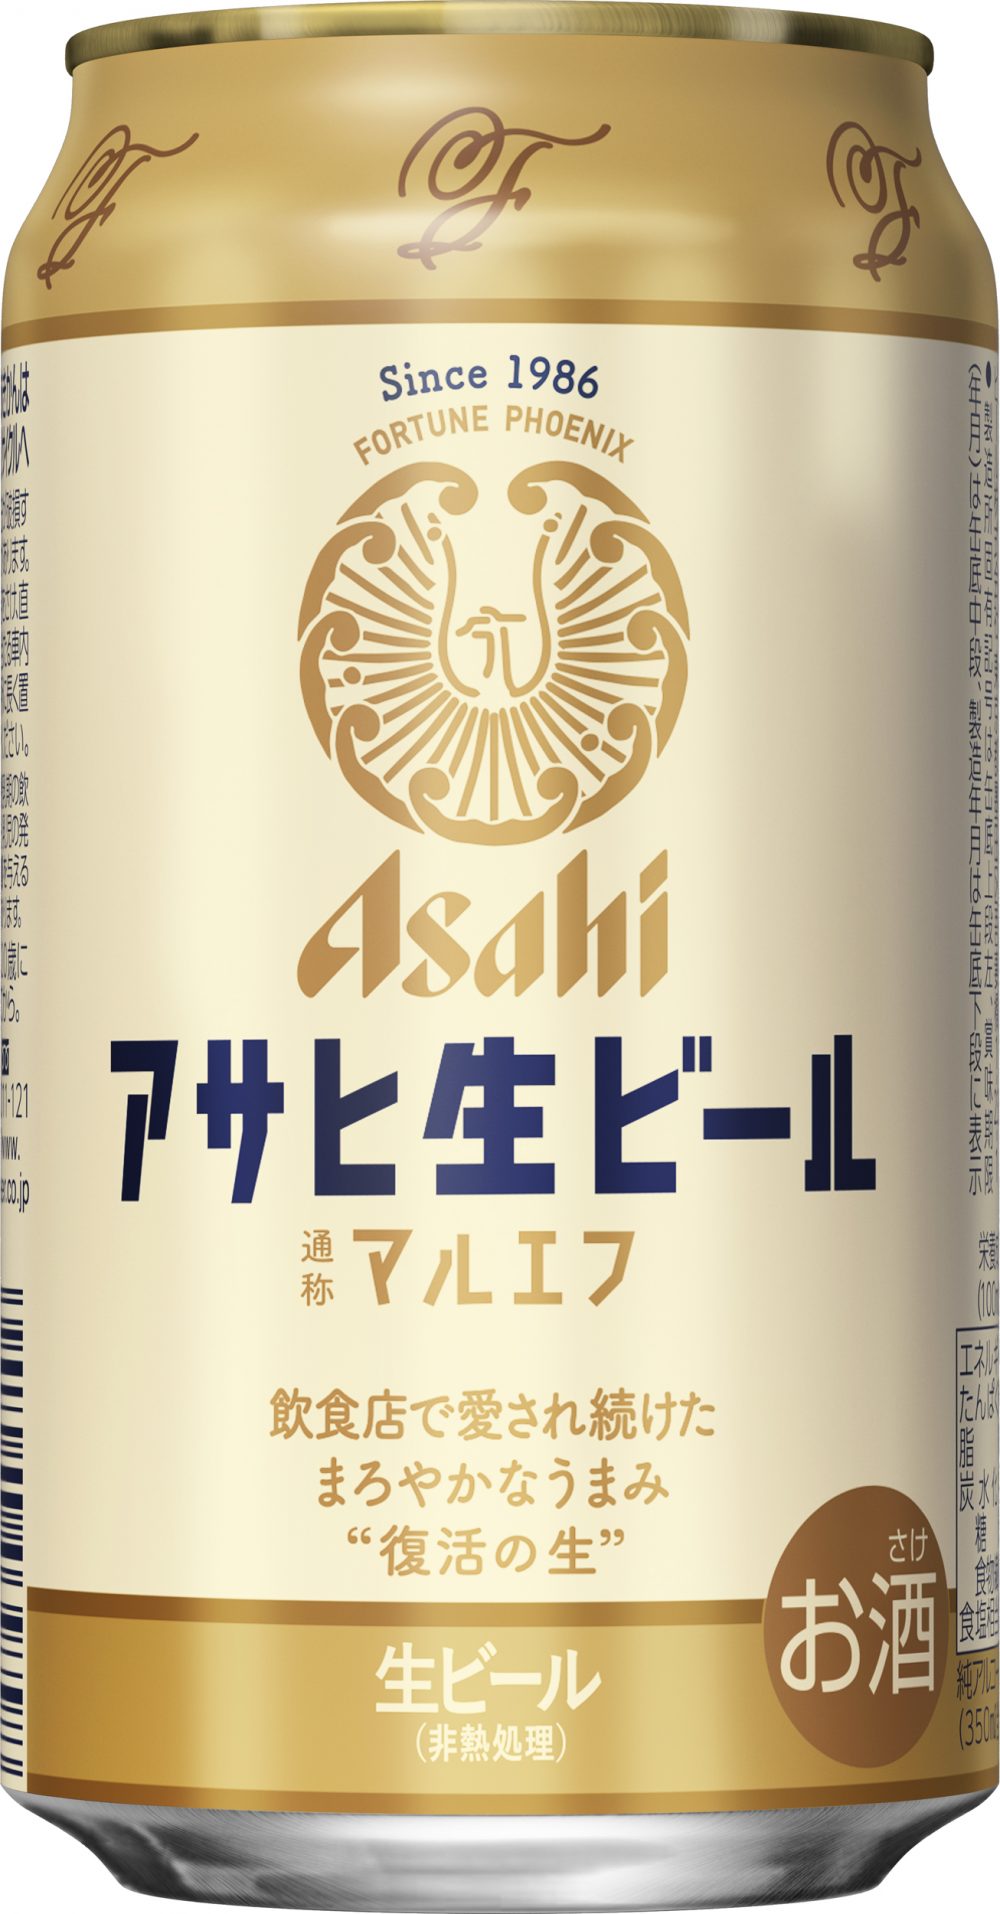 アサヒビール「アサヒ生ビール」実勢価格￥200前後。アサヒビールの代名詞といえばスーパードライ。そのスーパードライが発売される前年の1986年に、アサヒビールは新しいビールを新発売している。 それが「コクがあるのに、キレがある。」というまったく新しい味でヒットした『アサヒ生ビール』。  アサヒビールの低迷期を支えた伝説の生ビールといえる同製品だが、スーパードライに注力するため1993年に缶の製造をストップし、飲食店向けのみ販売となり、一部の店だけで飲める幻のアサヒとして愛され続けてきた。  そんな王道ビールが、ファンからの根強い支持を受けてこのたび復活。 「まろやか仕立て」製法で丁寧につくられる生ビールは、やわらかな口あたりと、まろやかな味わい、ほどよい苦味が特徴だ。 通称マルエフ。